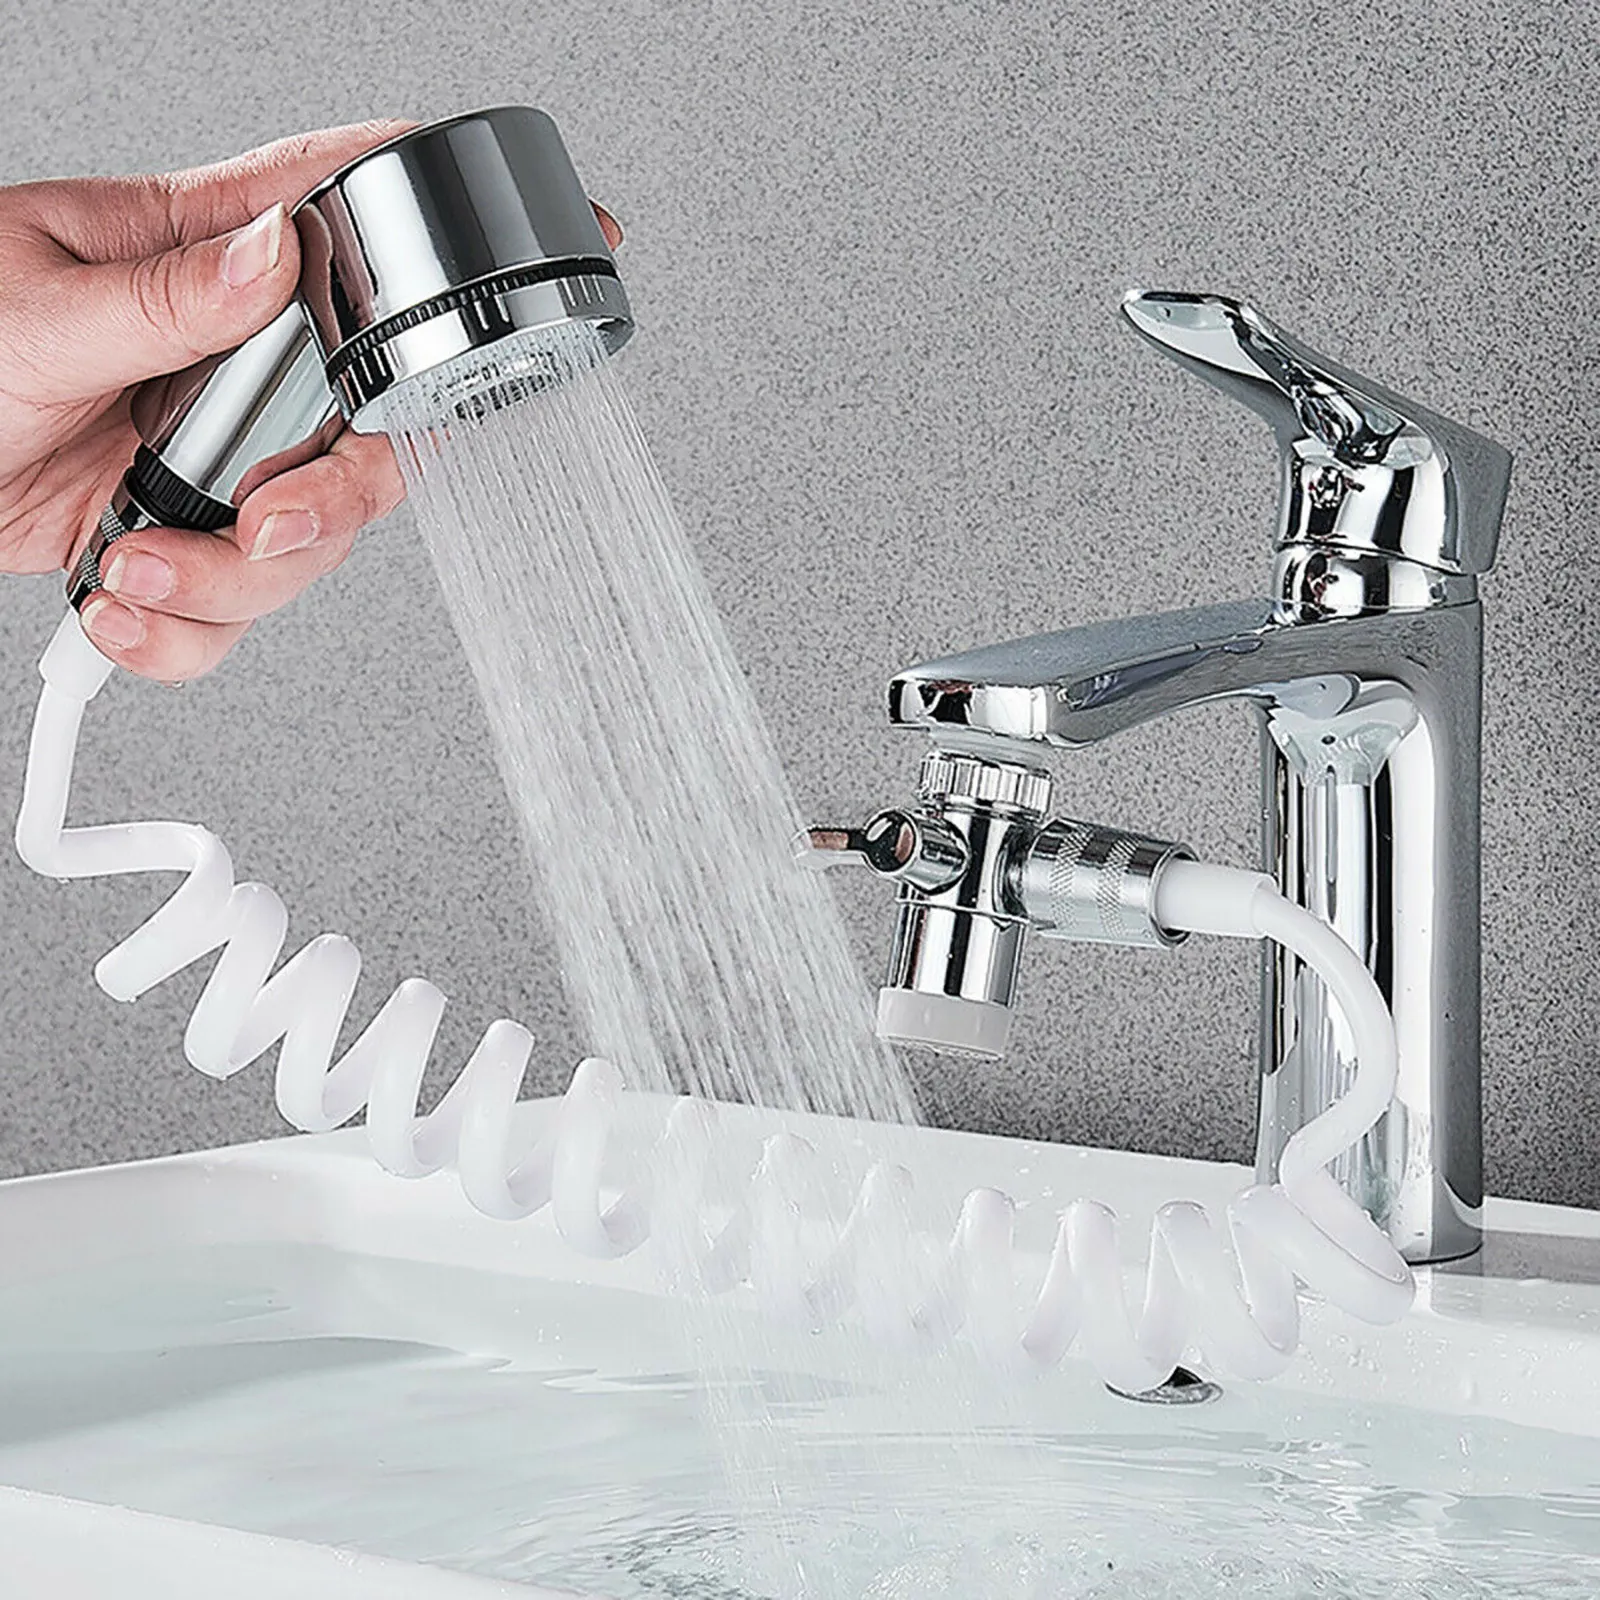 Zlew łazienki krany domowe kranu sprayer wodny dysza dysza regulowana prysznic zestaw prysznicowy Wallmounmed Dogodne do zainstalowania Bvuyyu 230726